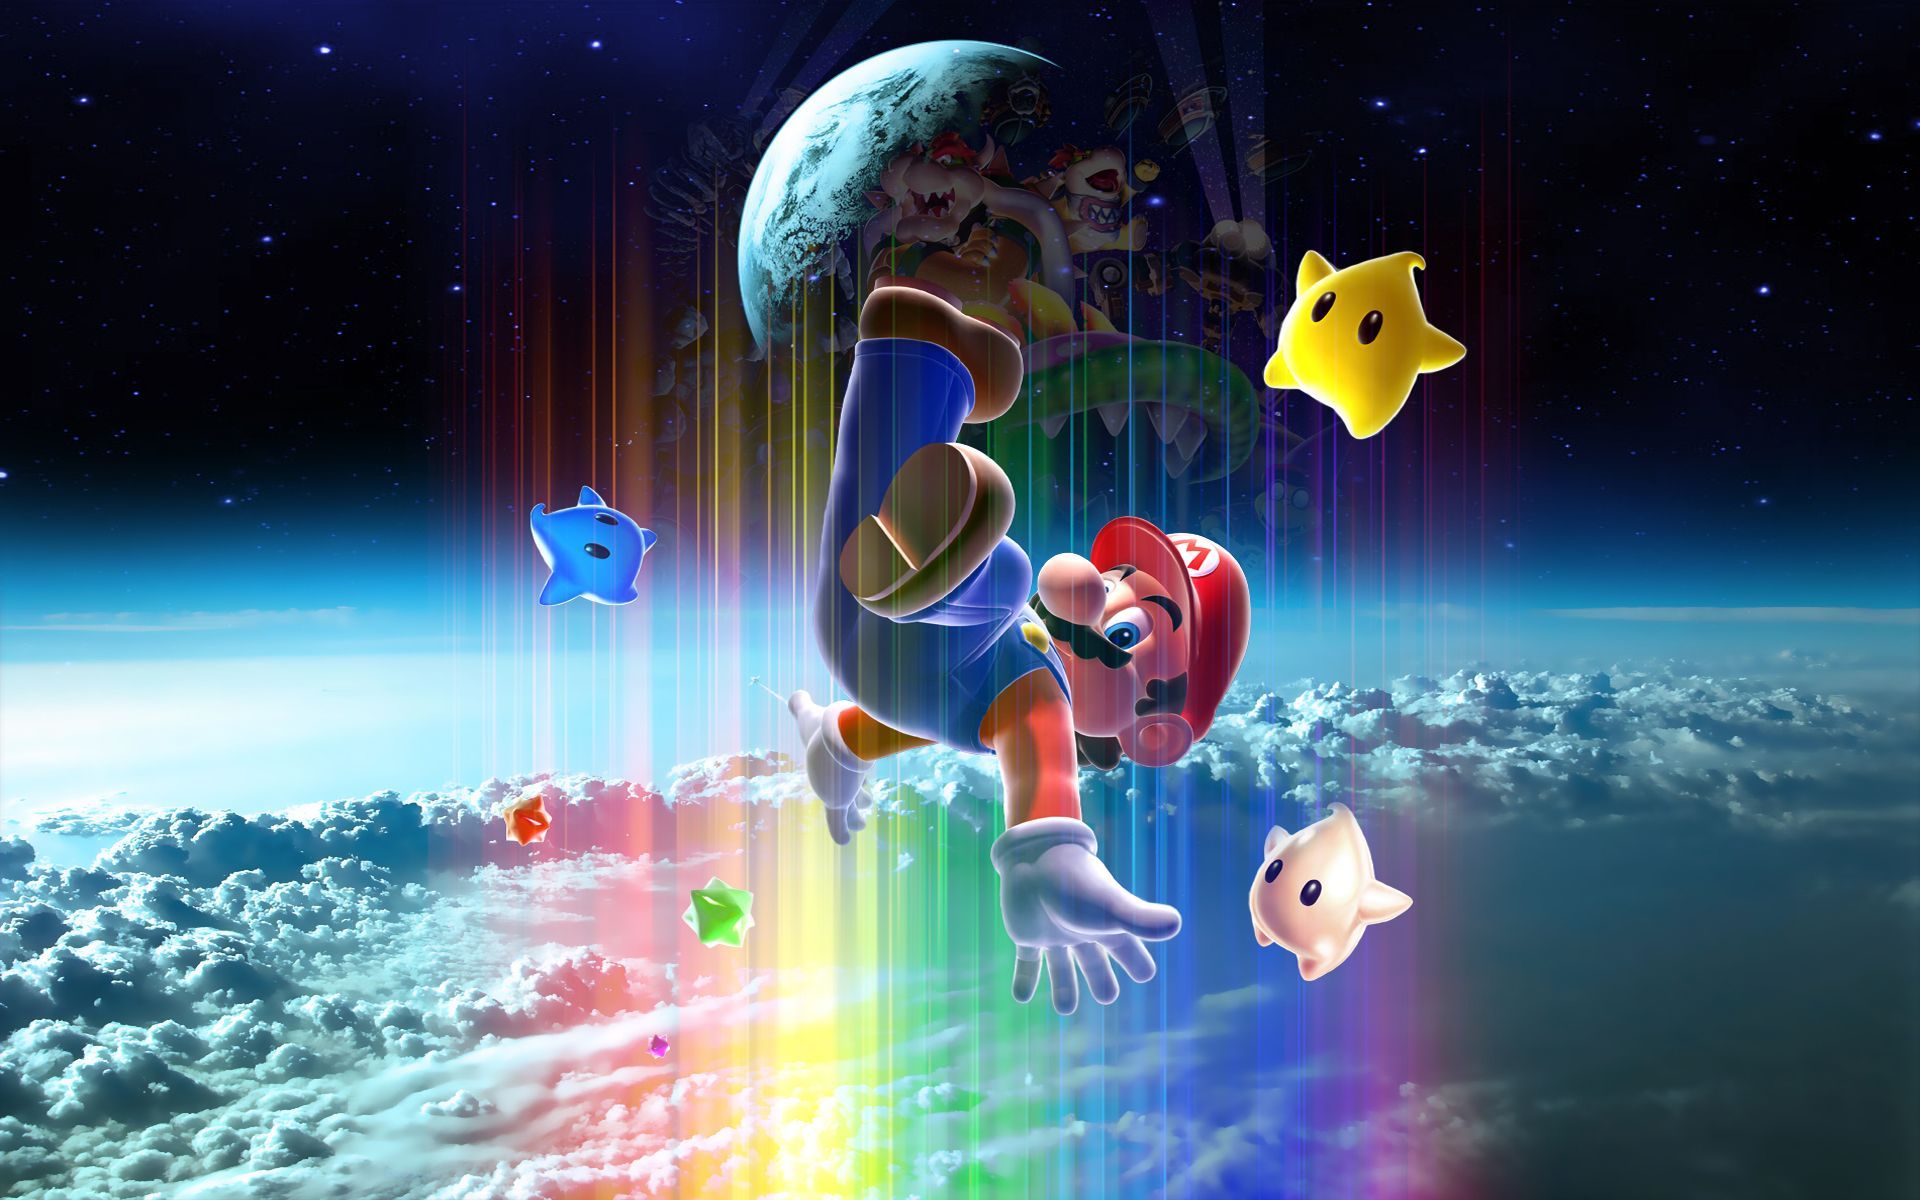 Super Mario Galaxy 2 Wallpapers